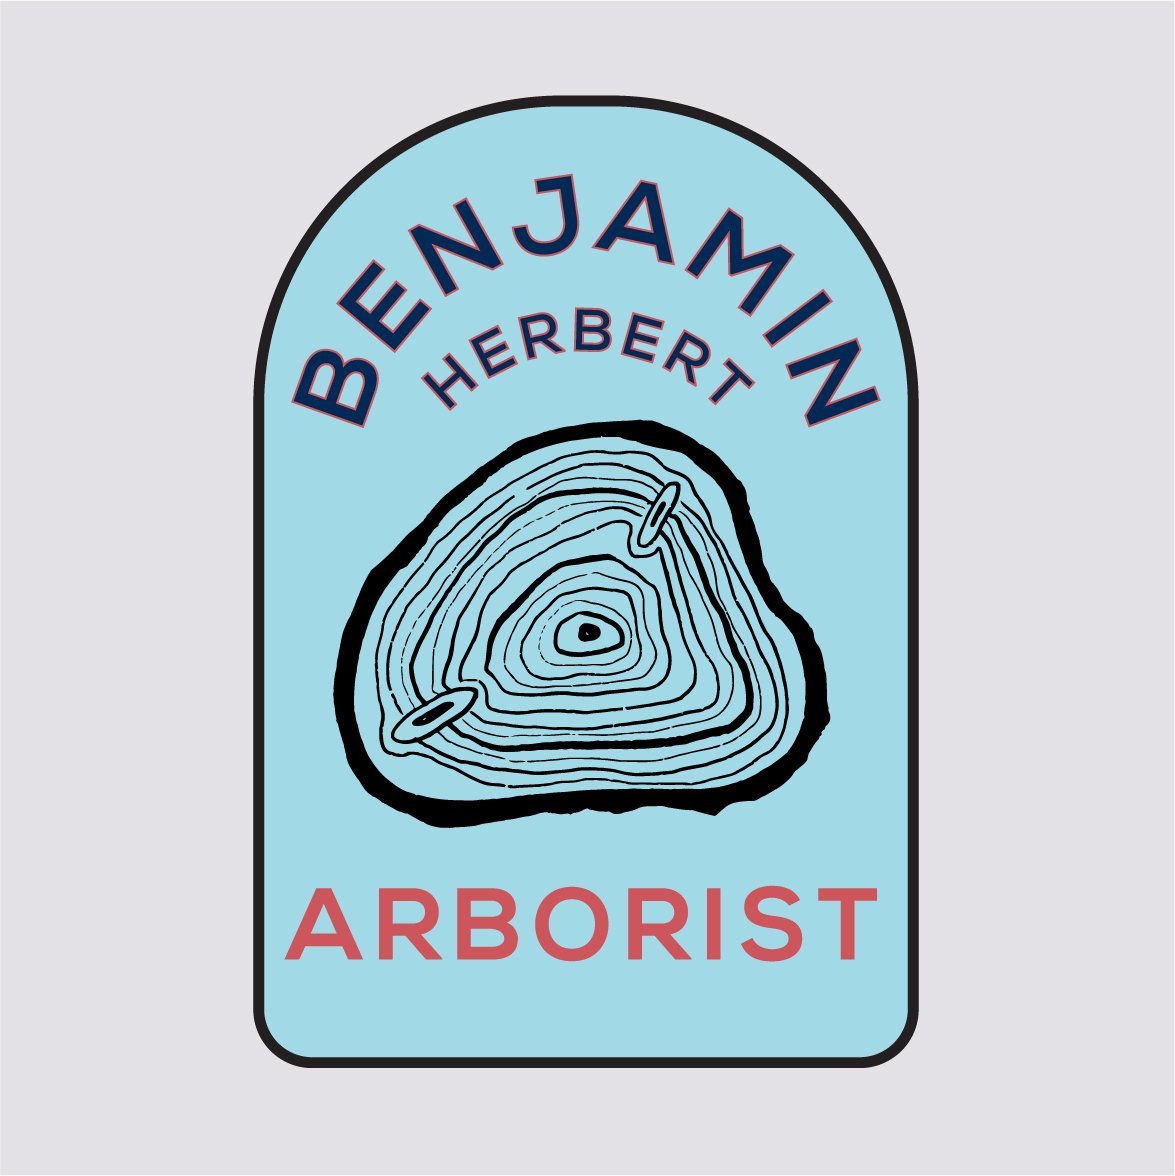 Benjamin Herber Arborist-logobadge6.jpg